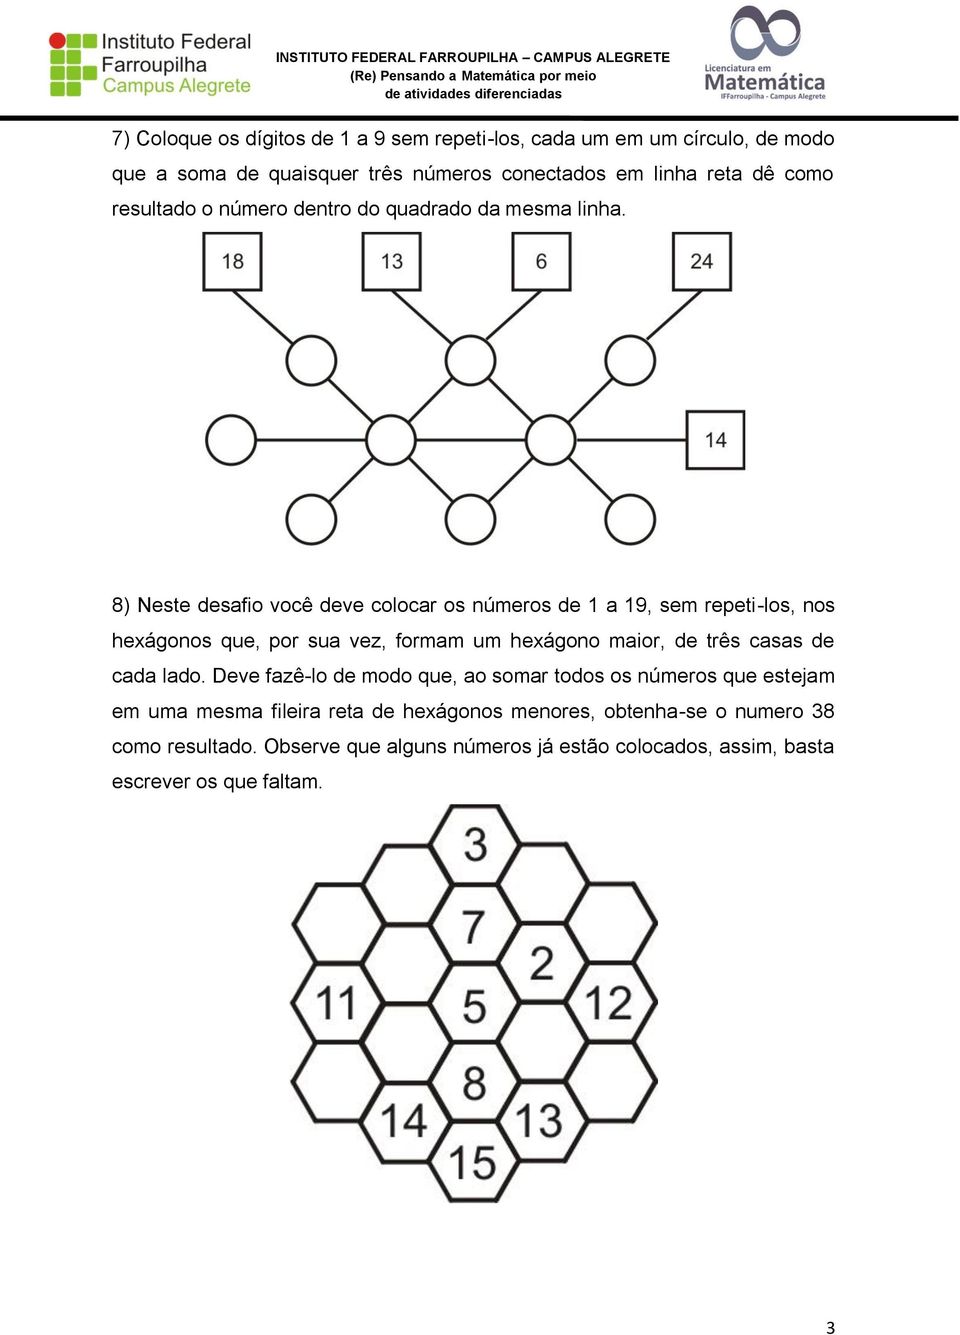 8) Neste desafio você deve colocar os números de 1 a 19, sem repeti-los, nos hexágonos que, por sua vez, formam um hexágono maior, de três casas de